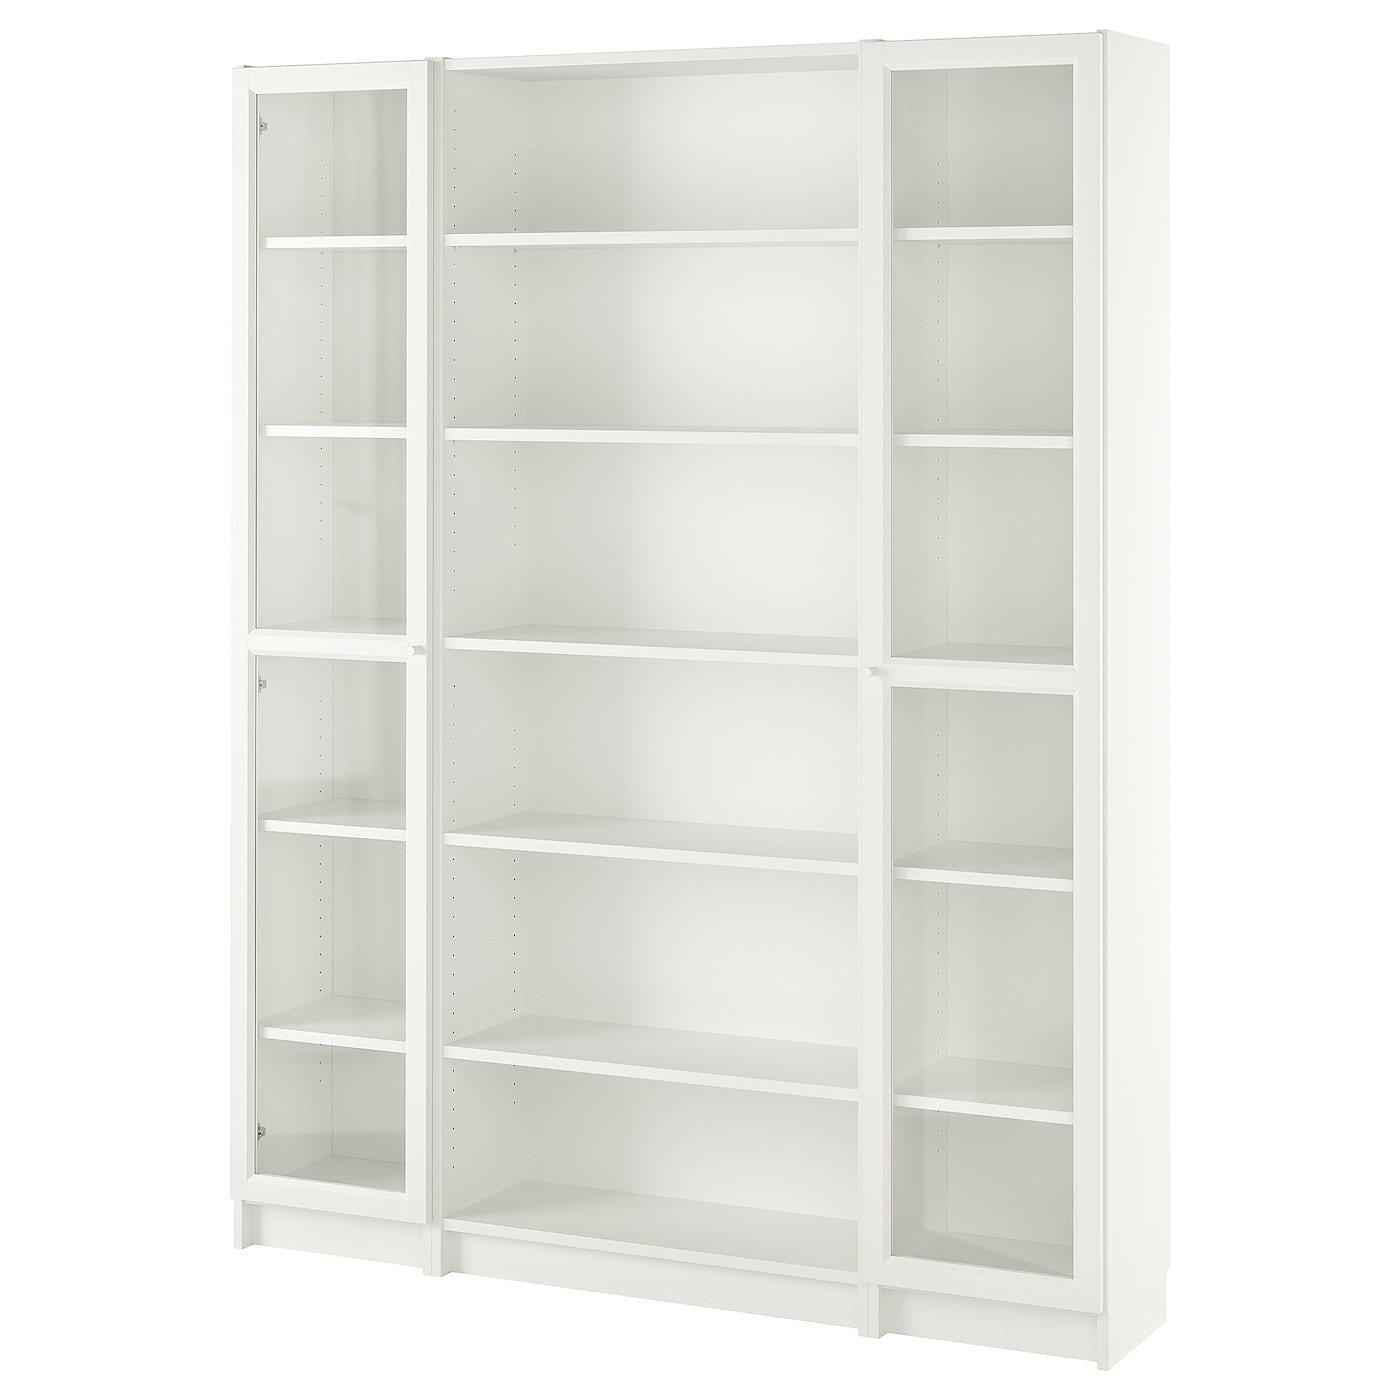 Книжный шкаф со стеклянной дверцей - BILLY IKEA/ БИЛЛИ ИКЕА, 30х160х202 см, белый